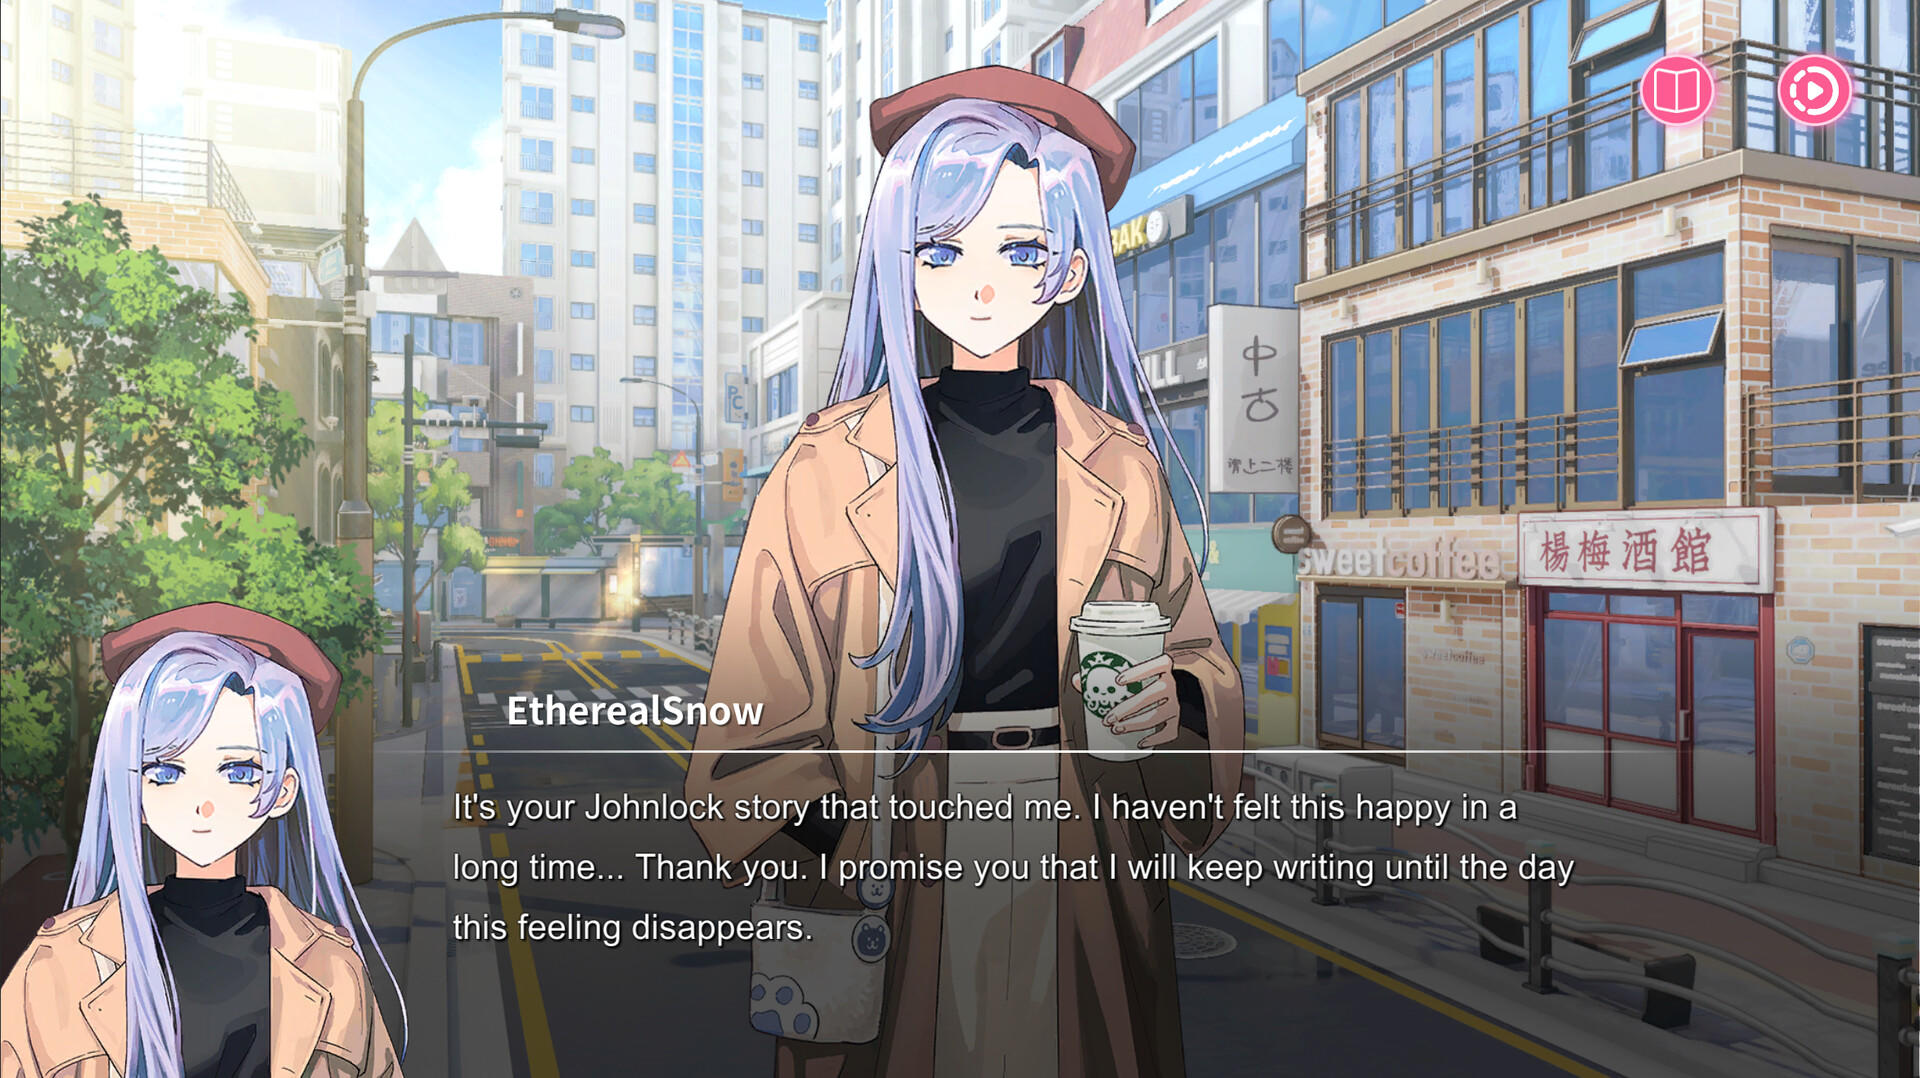 Sensei! I Like You So Much! screenshot game